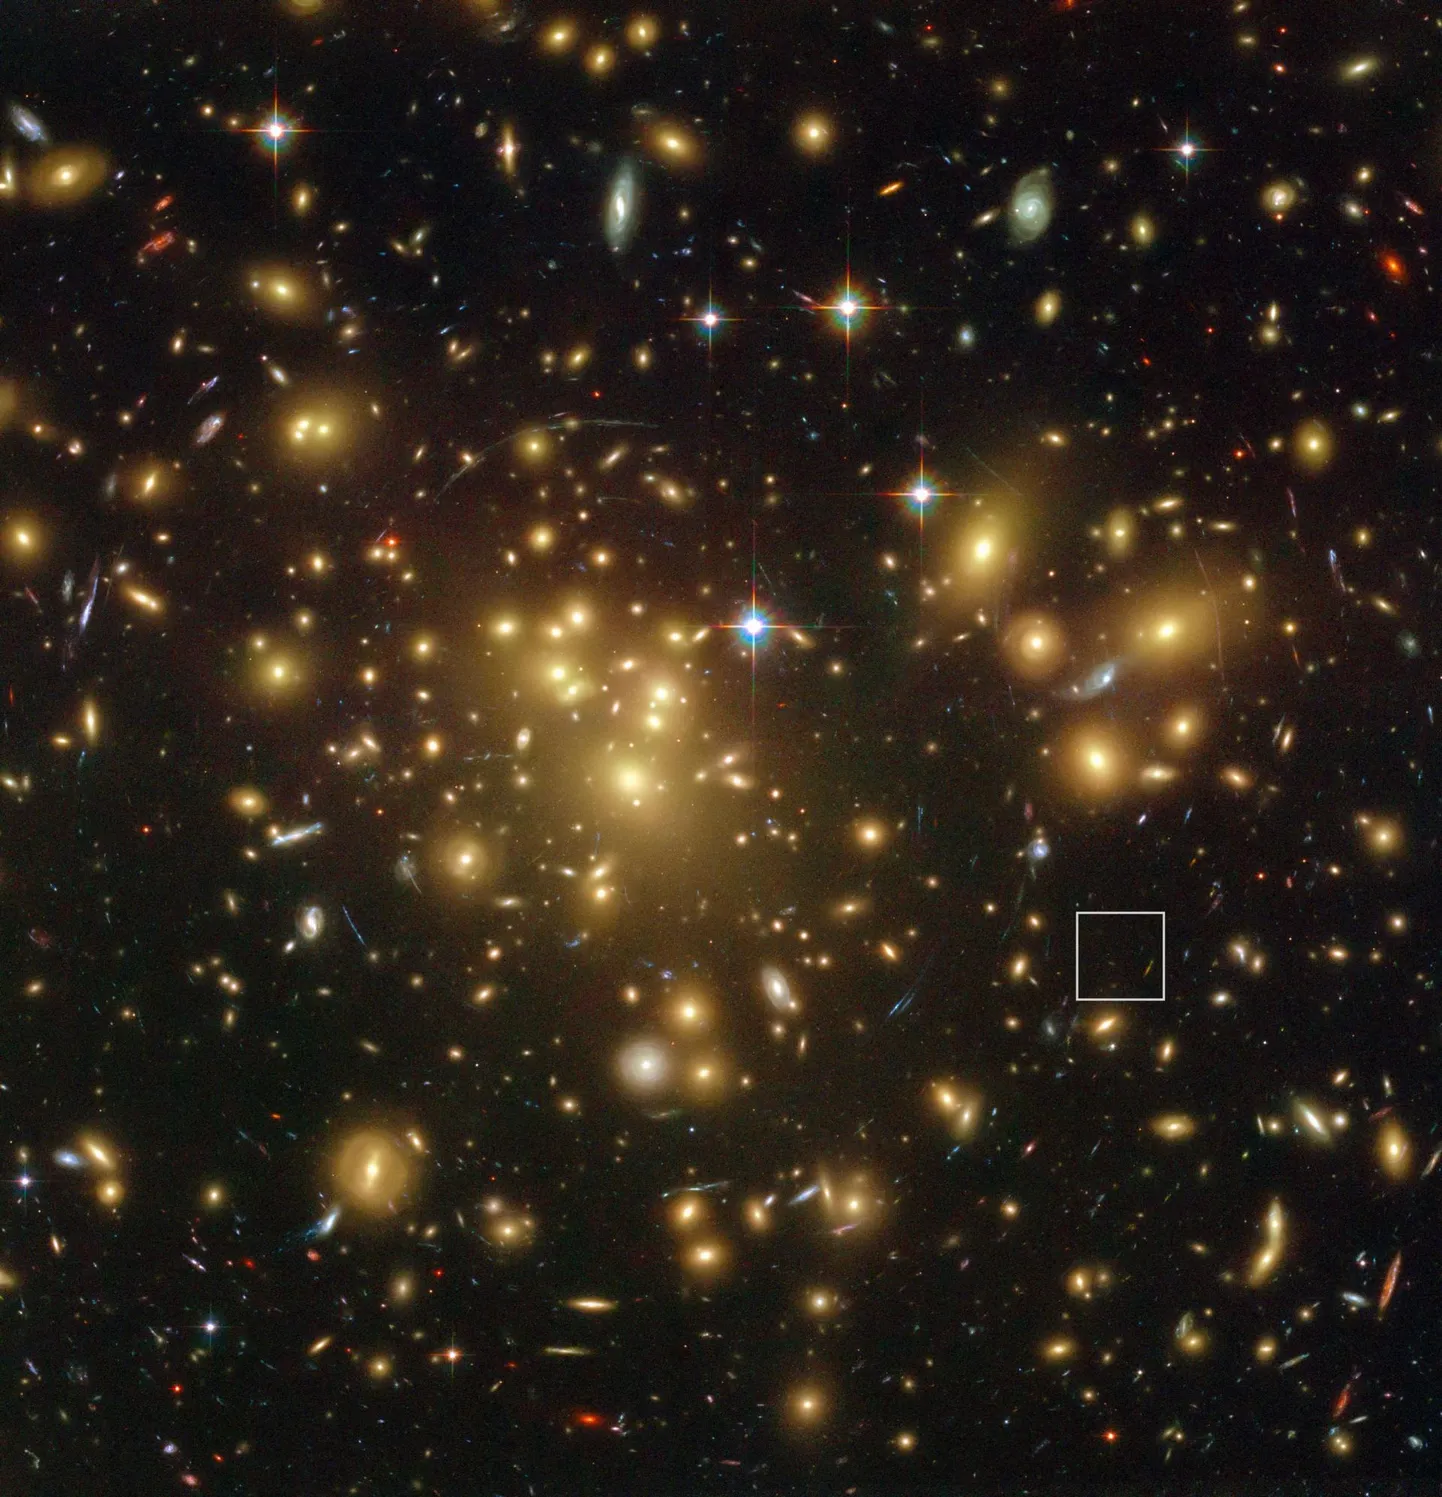 Galaktikaparv Abell 1689, mis asub meist 2,2 miljardi valgusaasta kaugusel. Sellesse kuulub üle 160 000 tähepilve. Ruudukese sees on galaktika A1689-zD1, mis on üks meist kõige kaugemal asuvaid galaktikaid - 13 miljardi valgusaasta kaugusel.